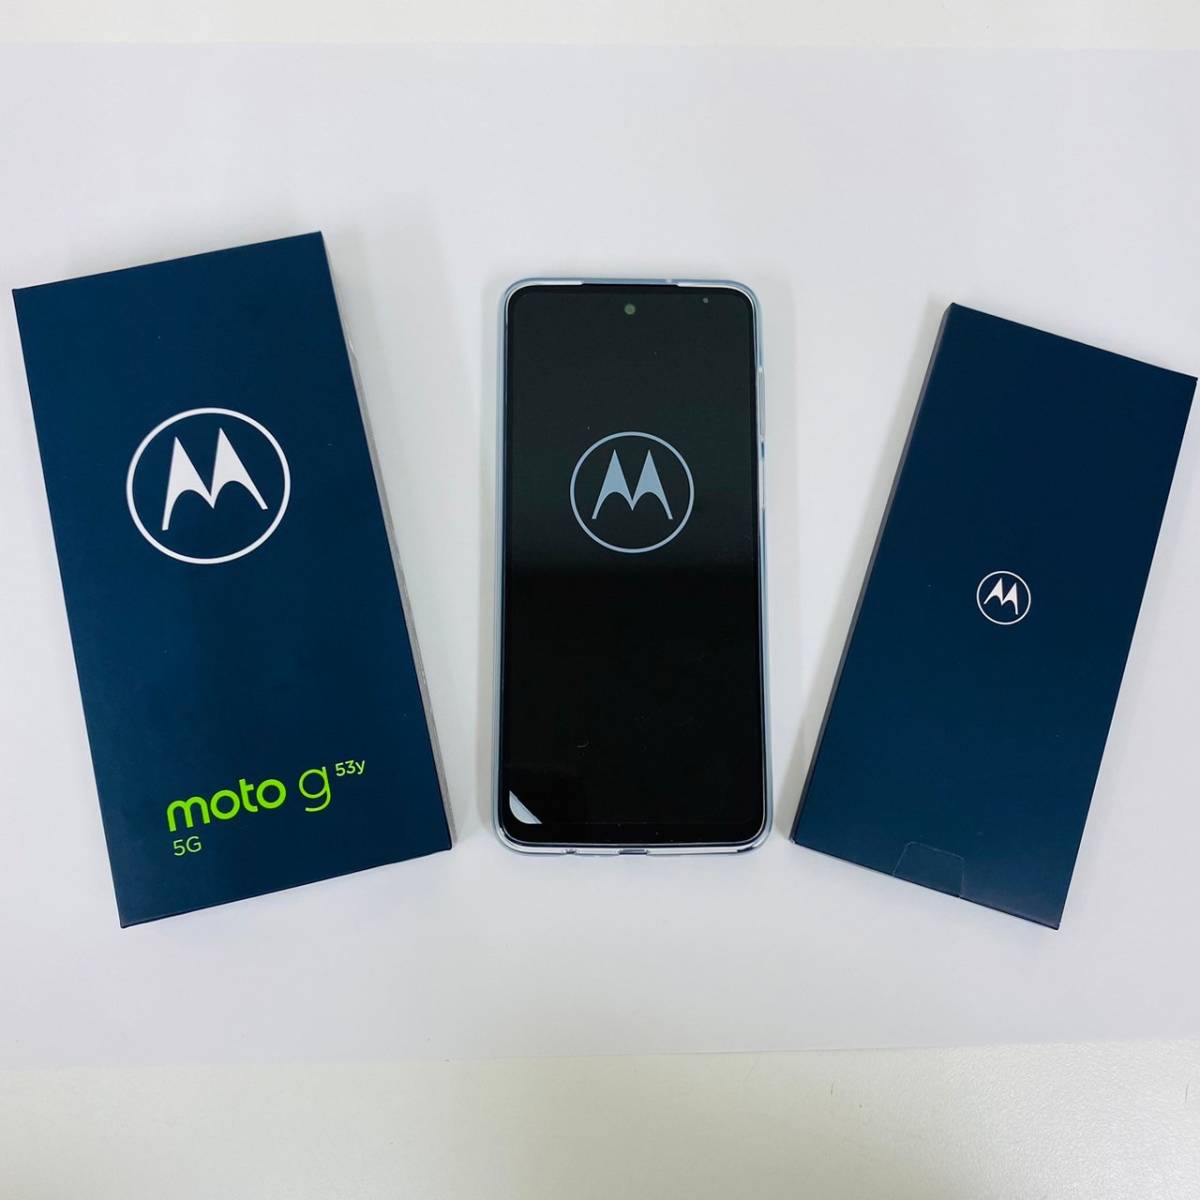 【K-25621】Motorola(モトローラ) moto g53y 5G 128GB インクブラック MOSAD1 Y!mobile スマホ Android 352304692658636 判定〇_画像2